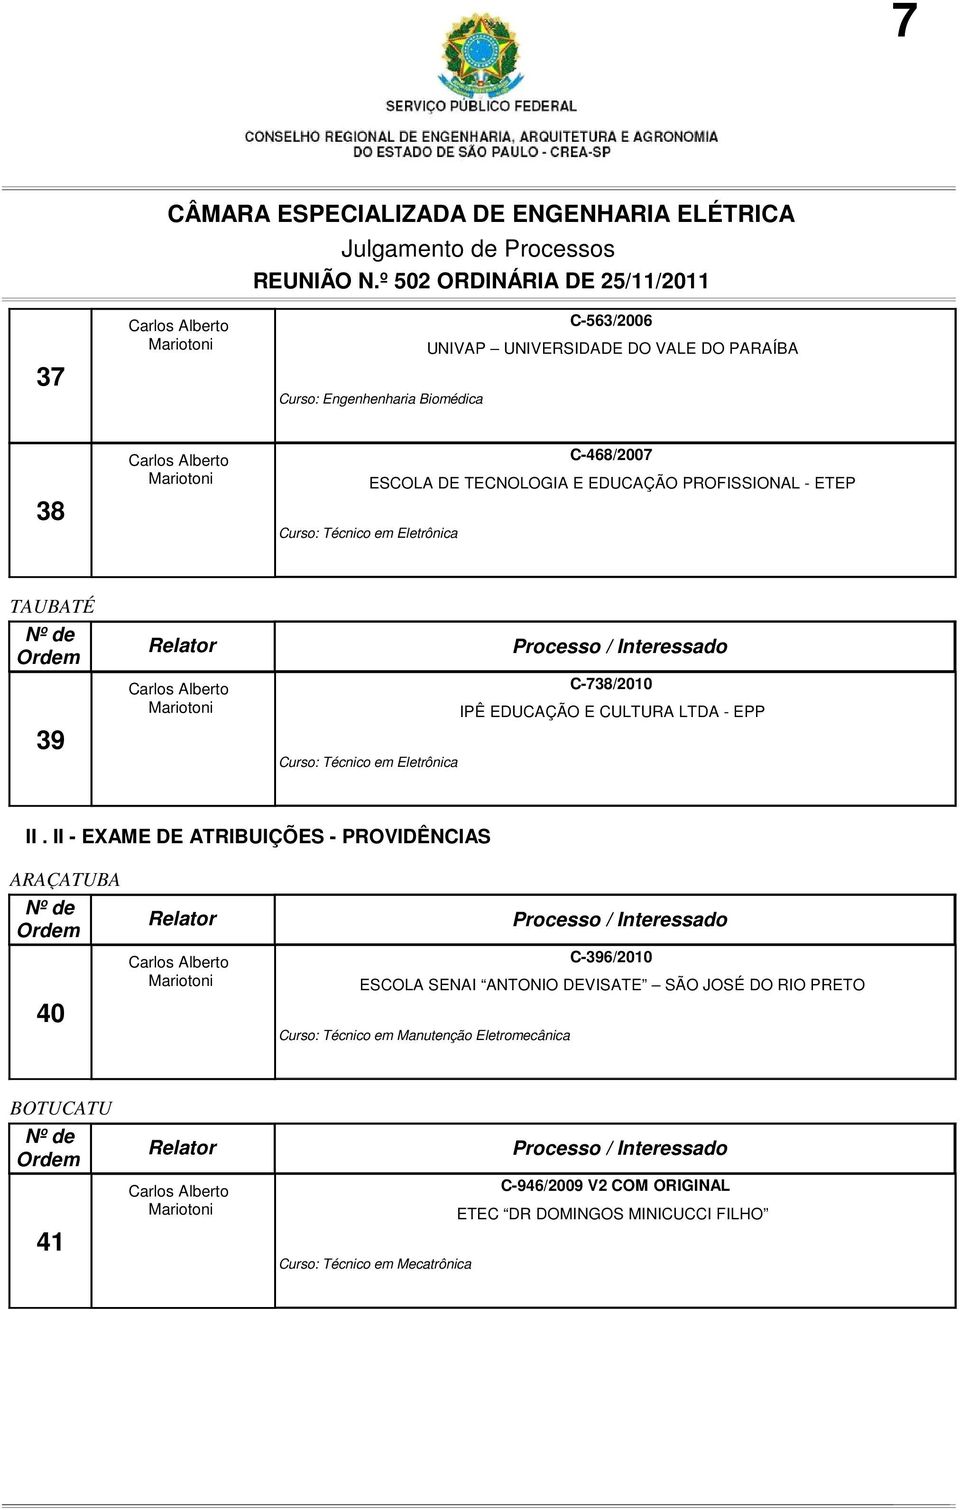 II - EXAME DE ATRIBUIÇÕES - PROVIDÊNCIAS ARAÇATUBA 40 C-396/2010 ESCOLA SENAI ANTONIO DEVISATE SÃO JOSÉ DO RIO